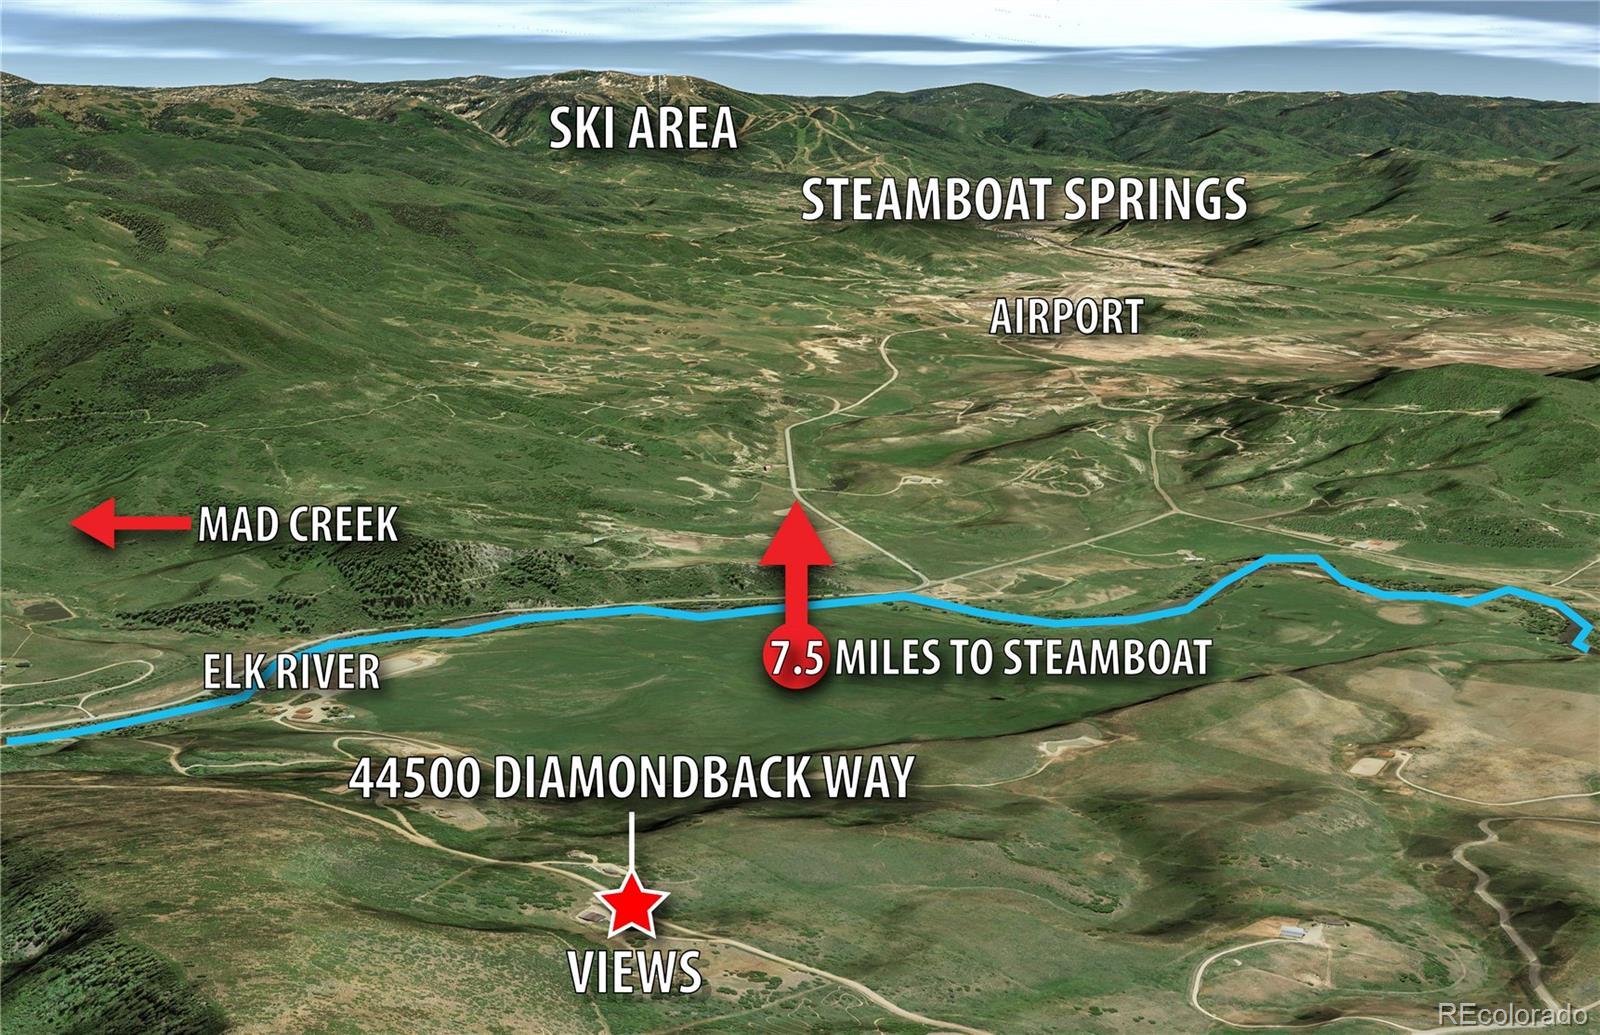 MLS Image #14 for 44500  diamondback way,steamboat springs, Colorado